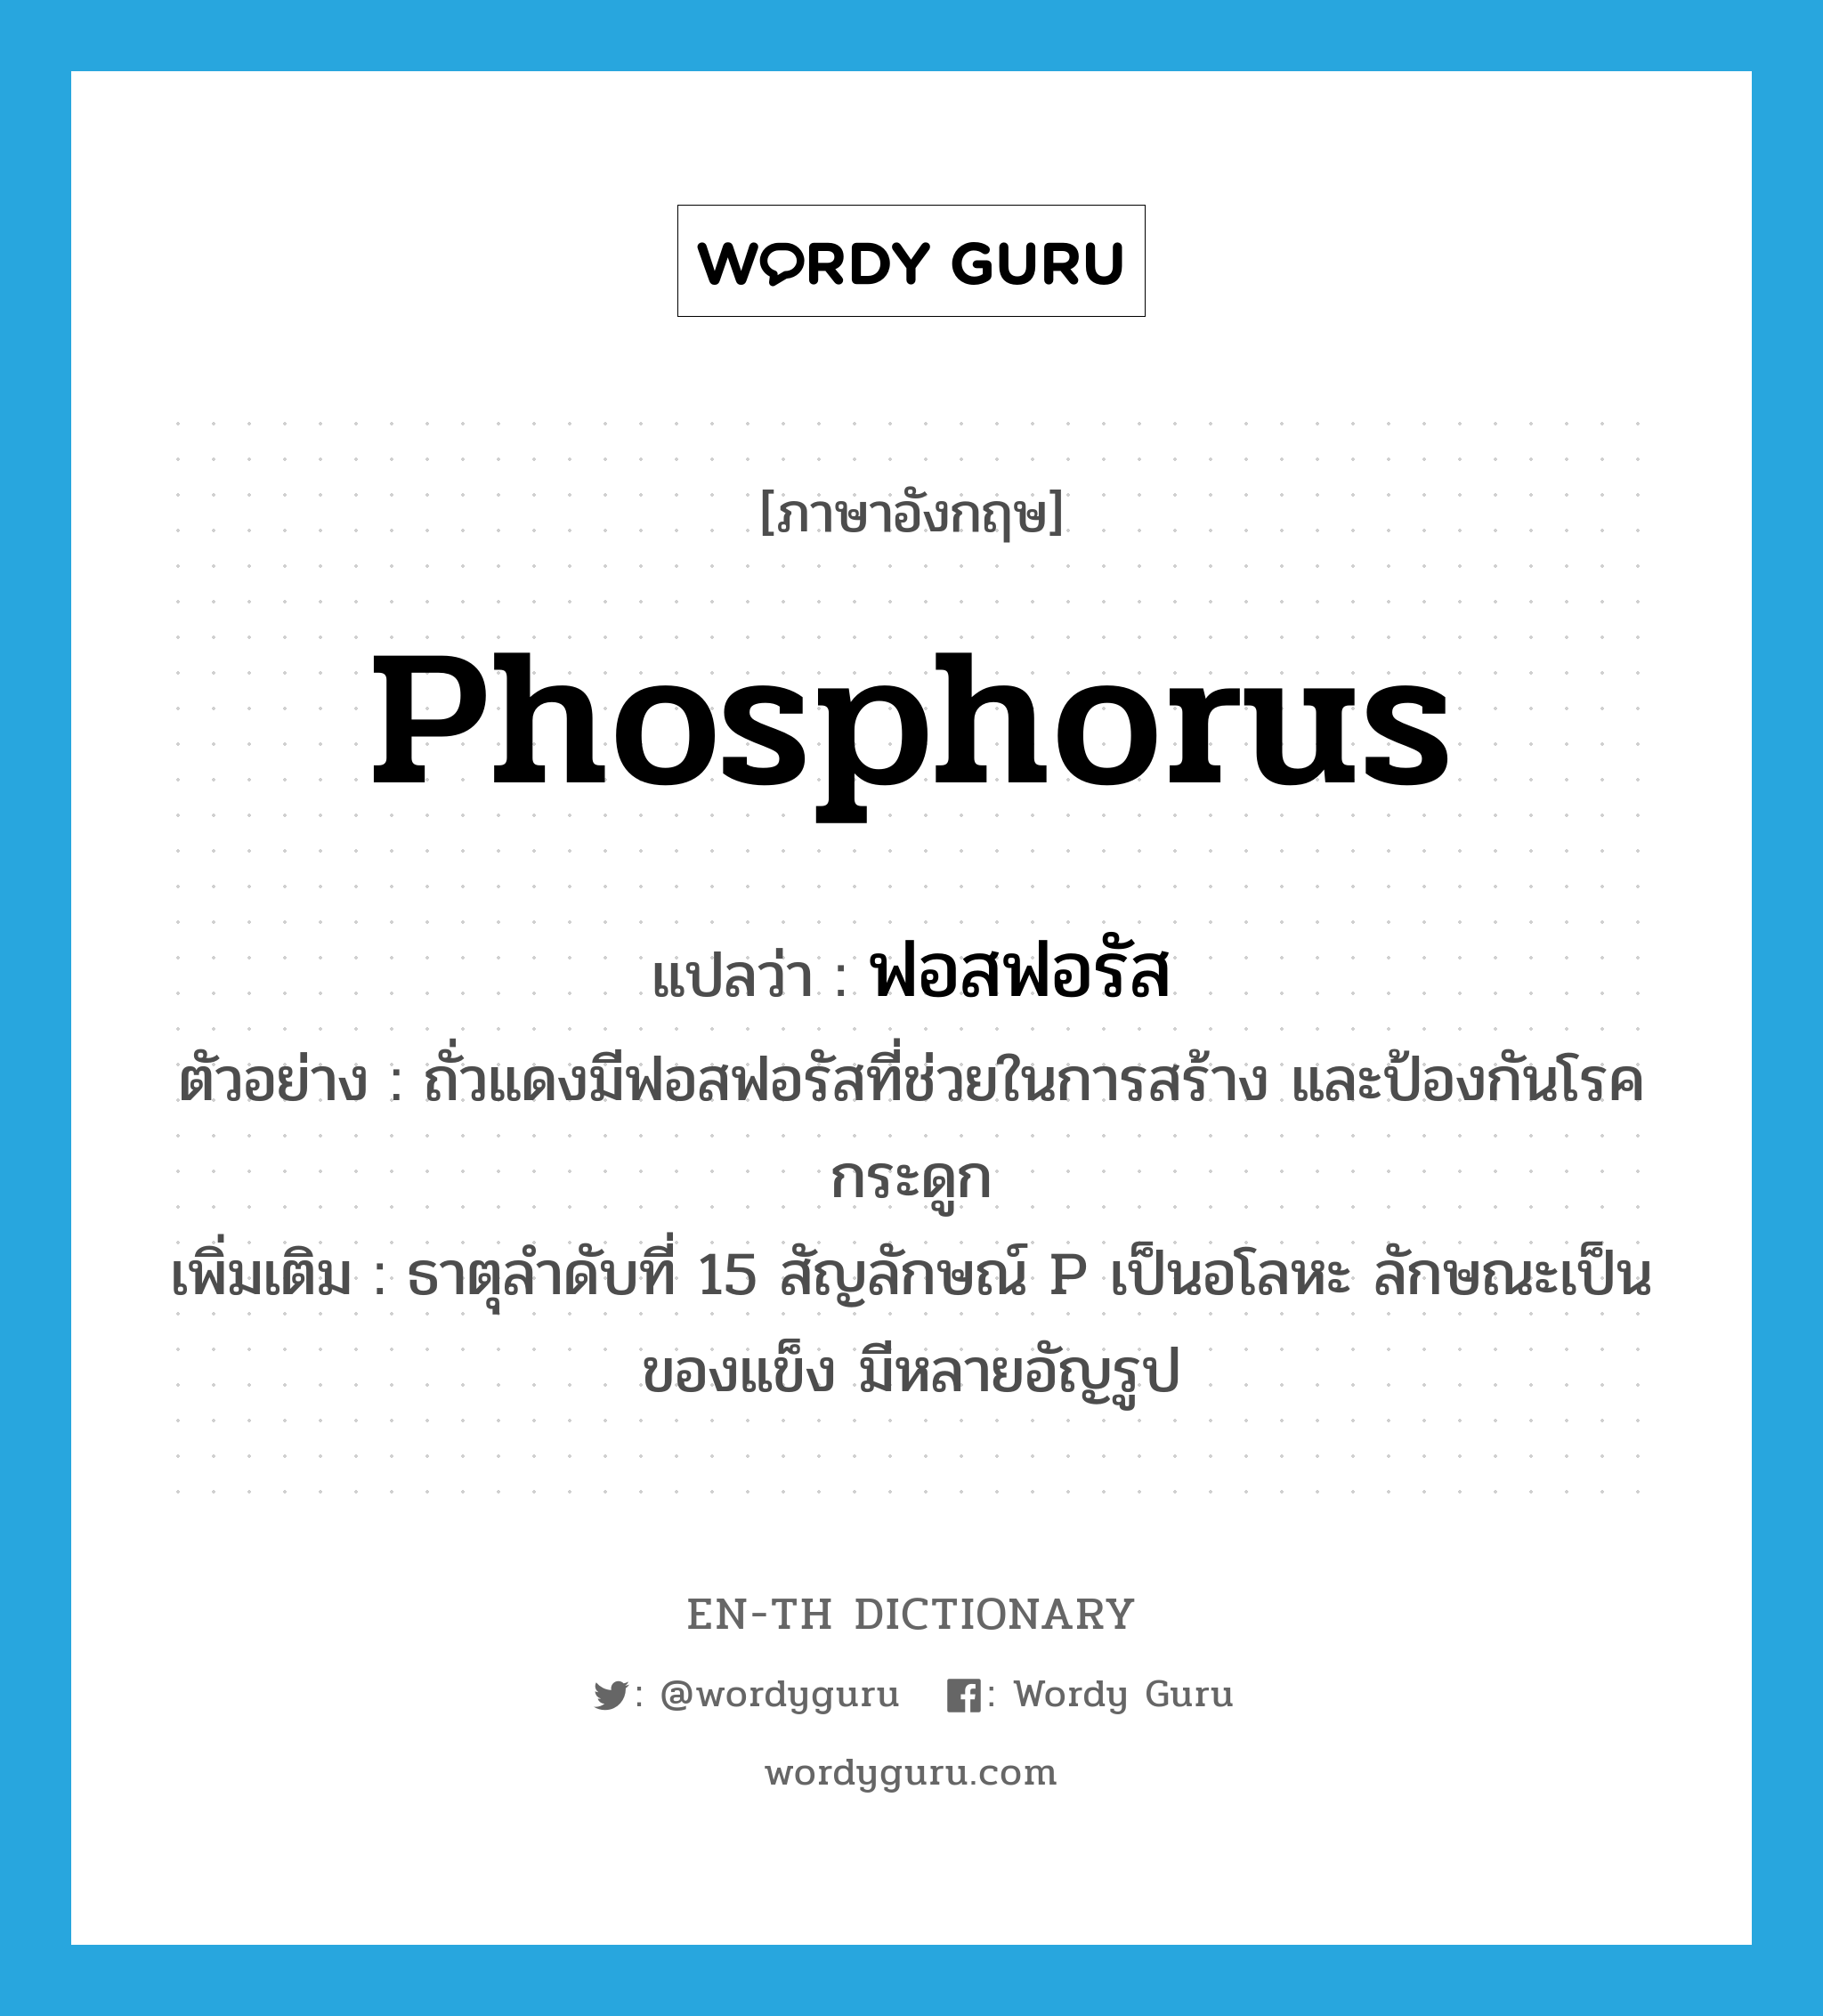 ฟอสฟอรัส ภาษาอังกฤษ?, คำศัพท์ภาษาอังกฤษ ฟอสฟอรัส แปลว่า phosphorus ประเภท N ตัวอย่าง ถั่วแดงมีฟอสฟอรัสที่ช่วยในการสร้าง และป้องกันโรคกระดูก เพิ่มเติม ธาตุลำดับที่ 15 สัญลักษณ์ P เป็นอโลหะ ลักษณะเป็นของแข็ง มีหลายอัญรูป หมวด N